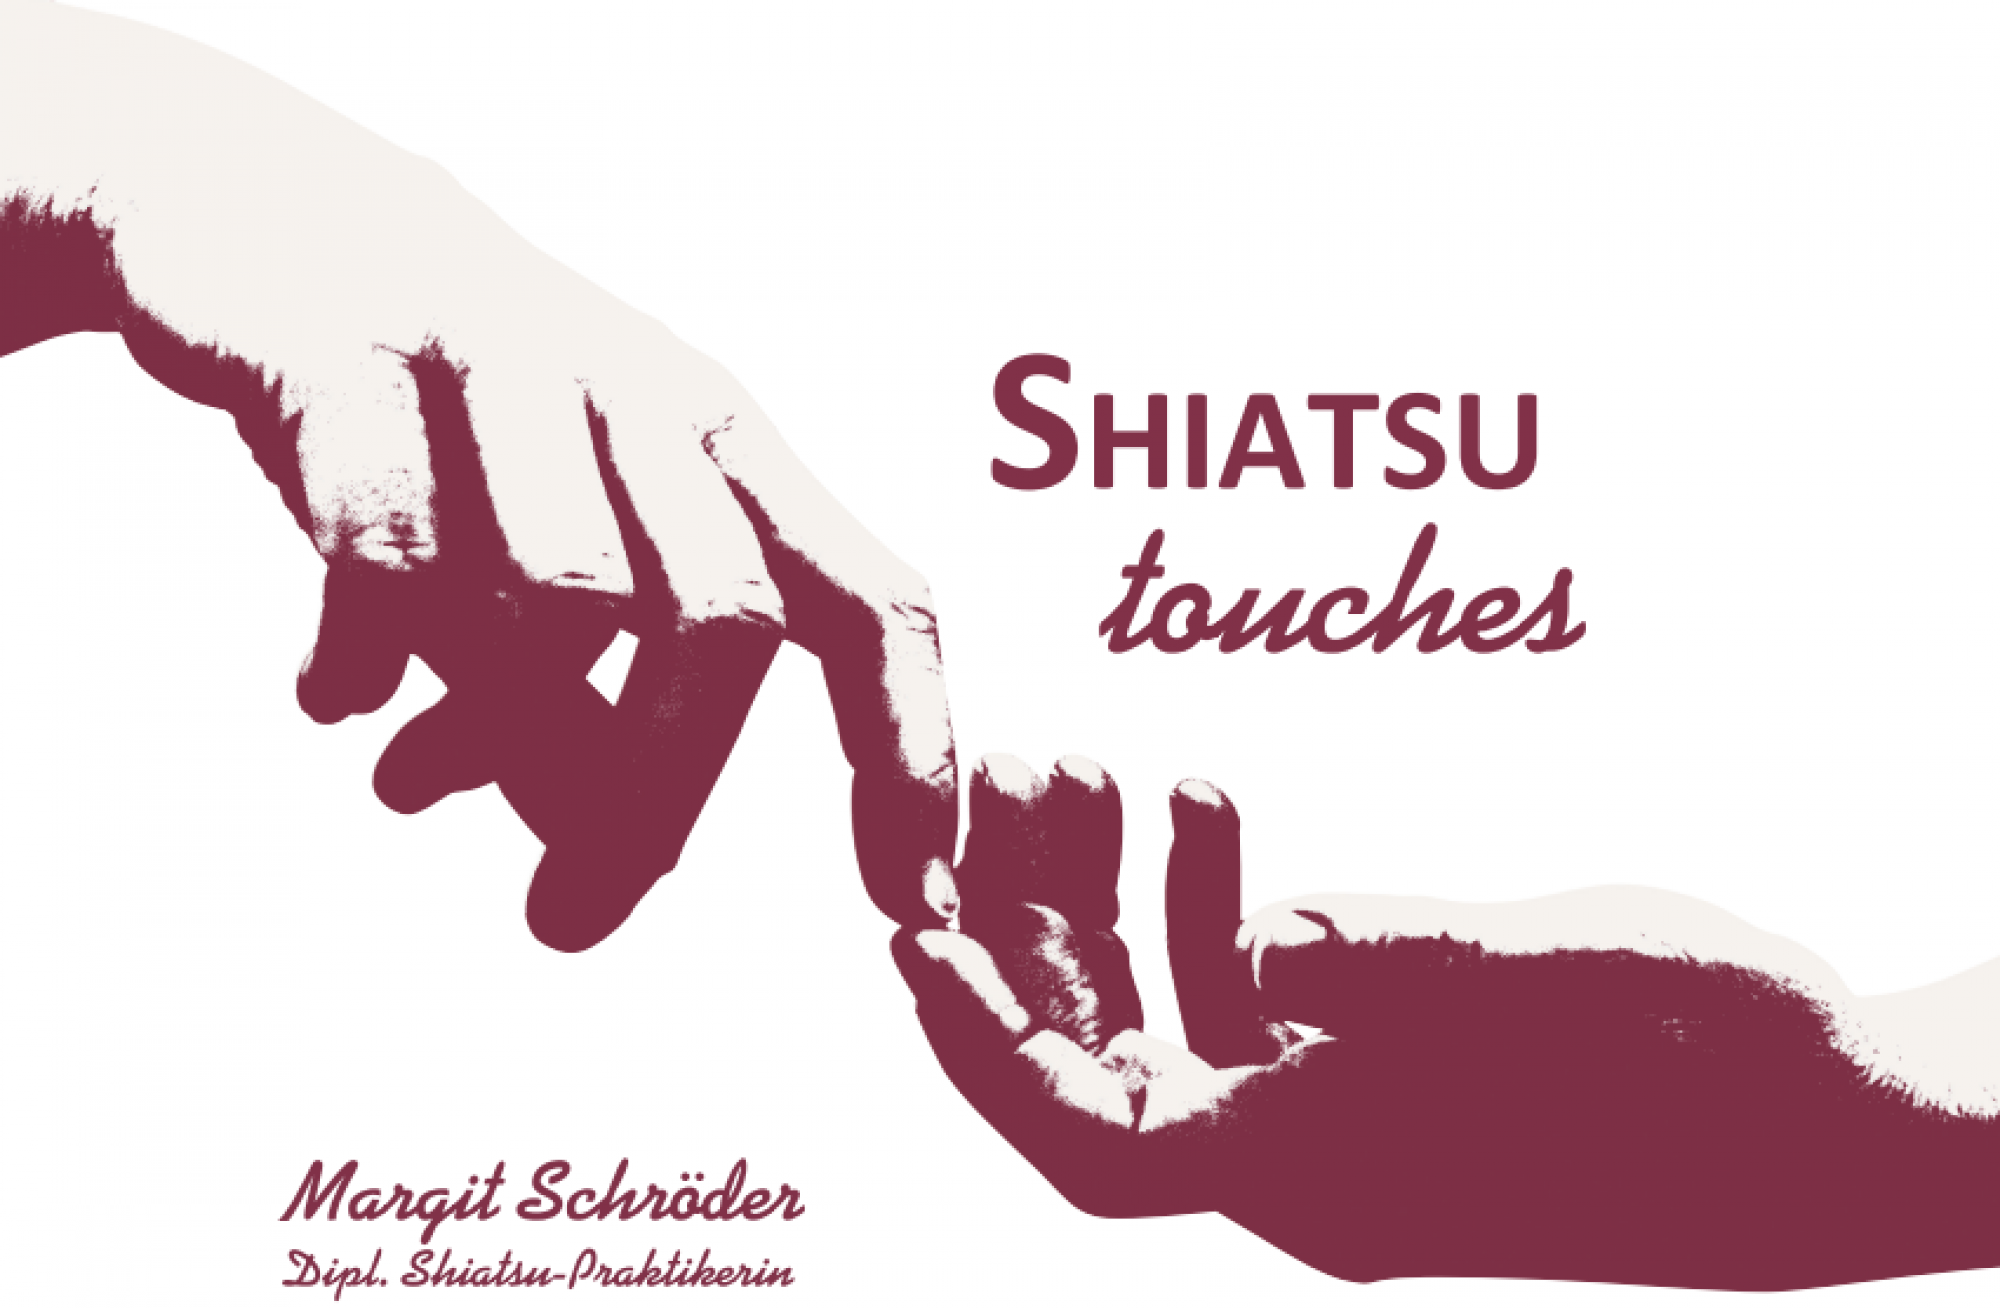 Shiatsu touches